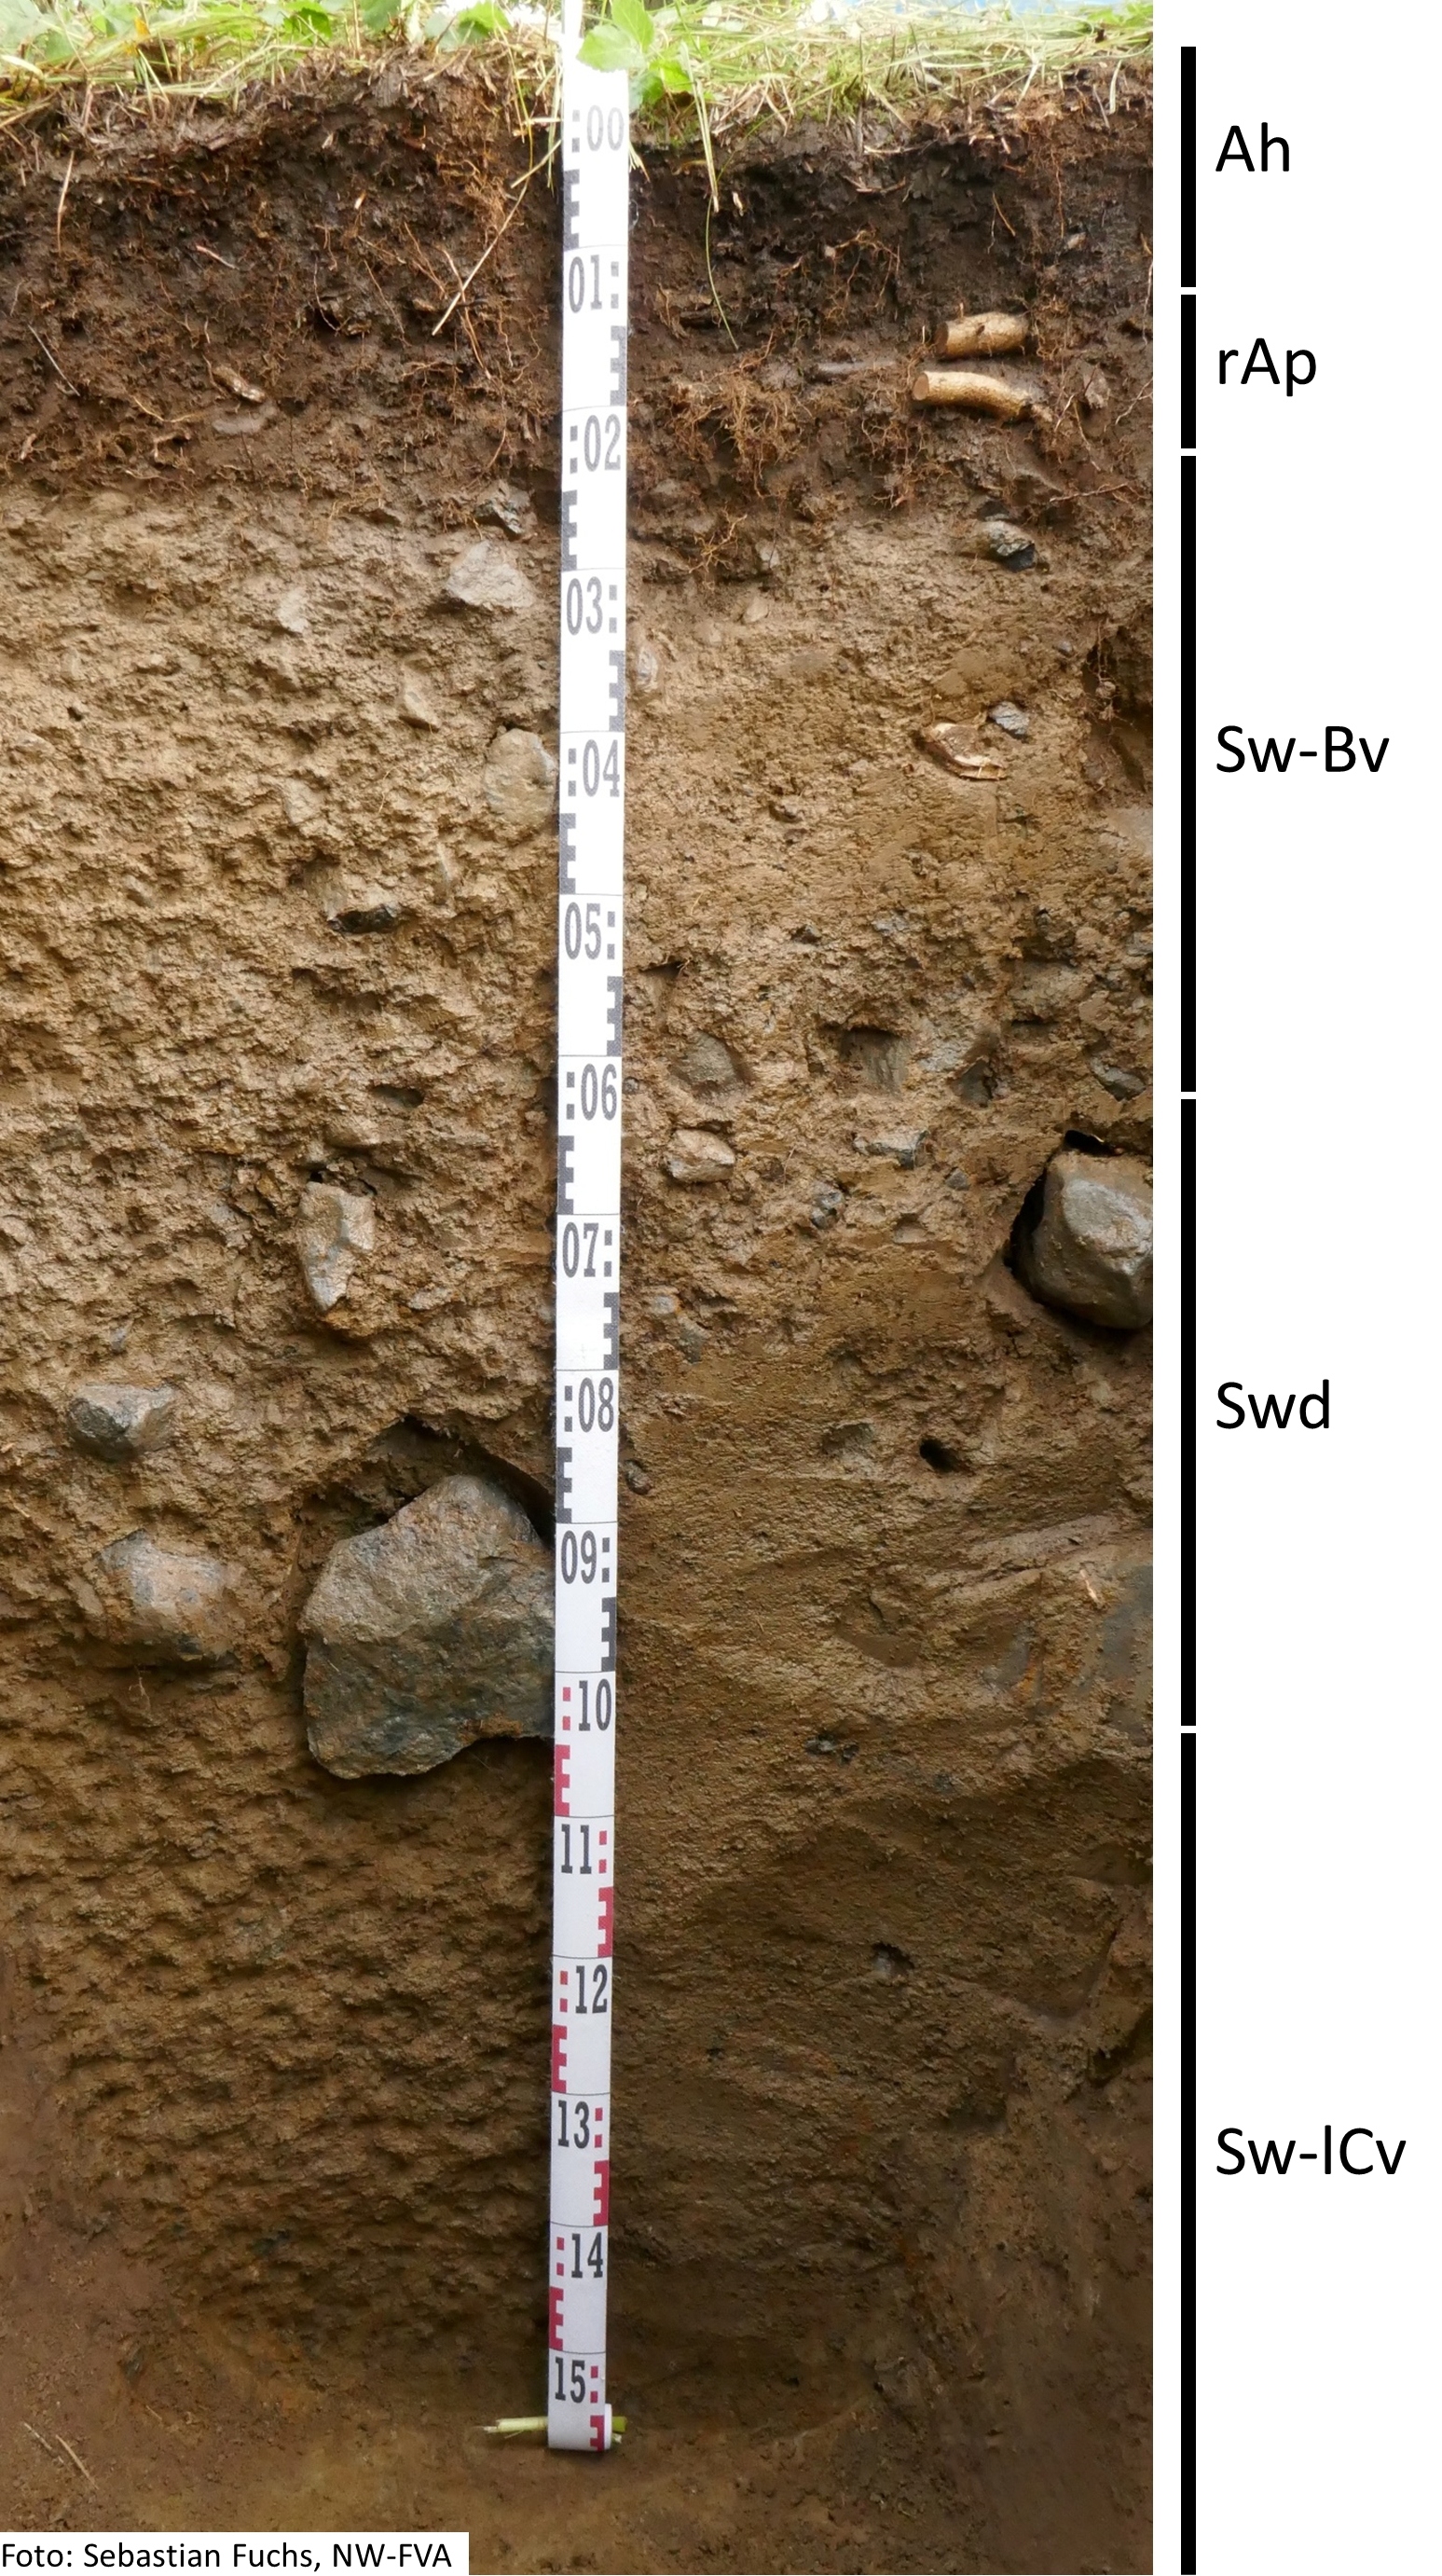 Das Foto zeigt einen senkrechten Schnitt durch den Boden der Untersuchungsfläche. Das Bodenprofil enthält folgende Bodenhorizonte: Ah, rAp, Sw-Bv, Swd, Sw-lCv